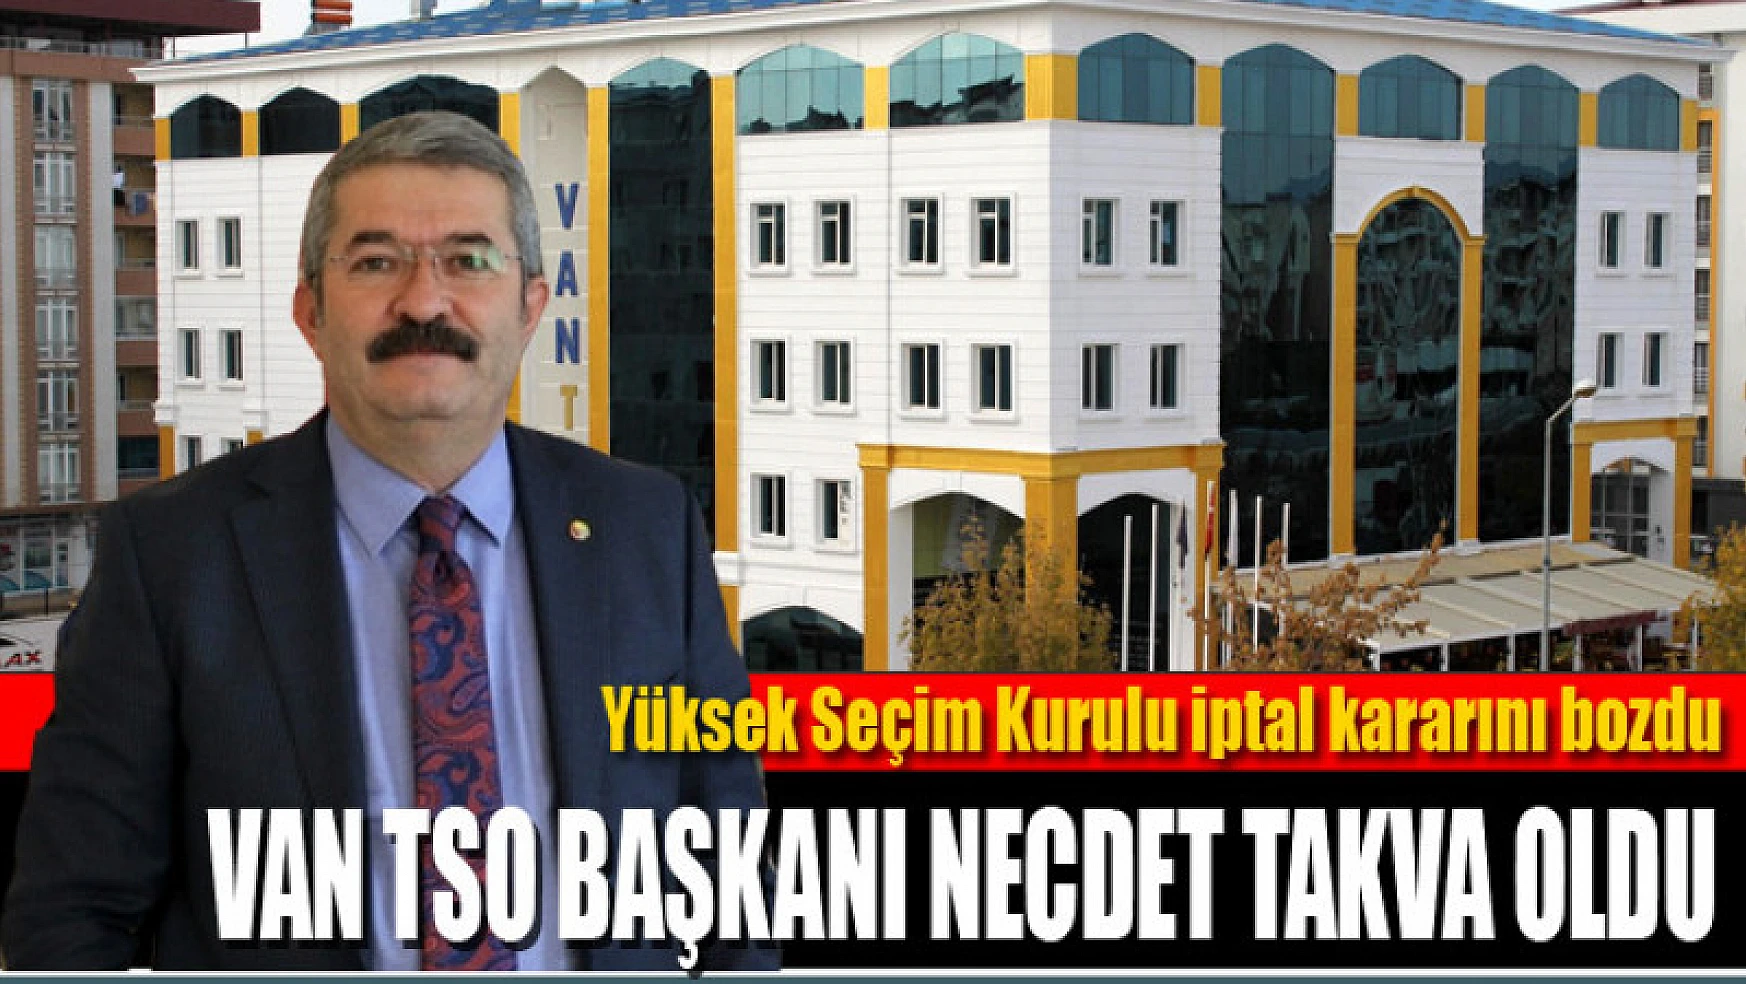 Yüksek Seçim Kurulu iptal kararını bozdu Van TSO Başkanı Necdet Takva oldu